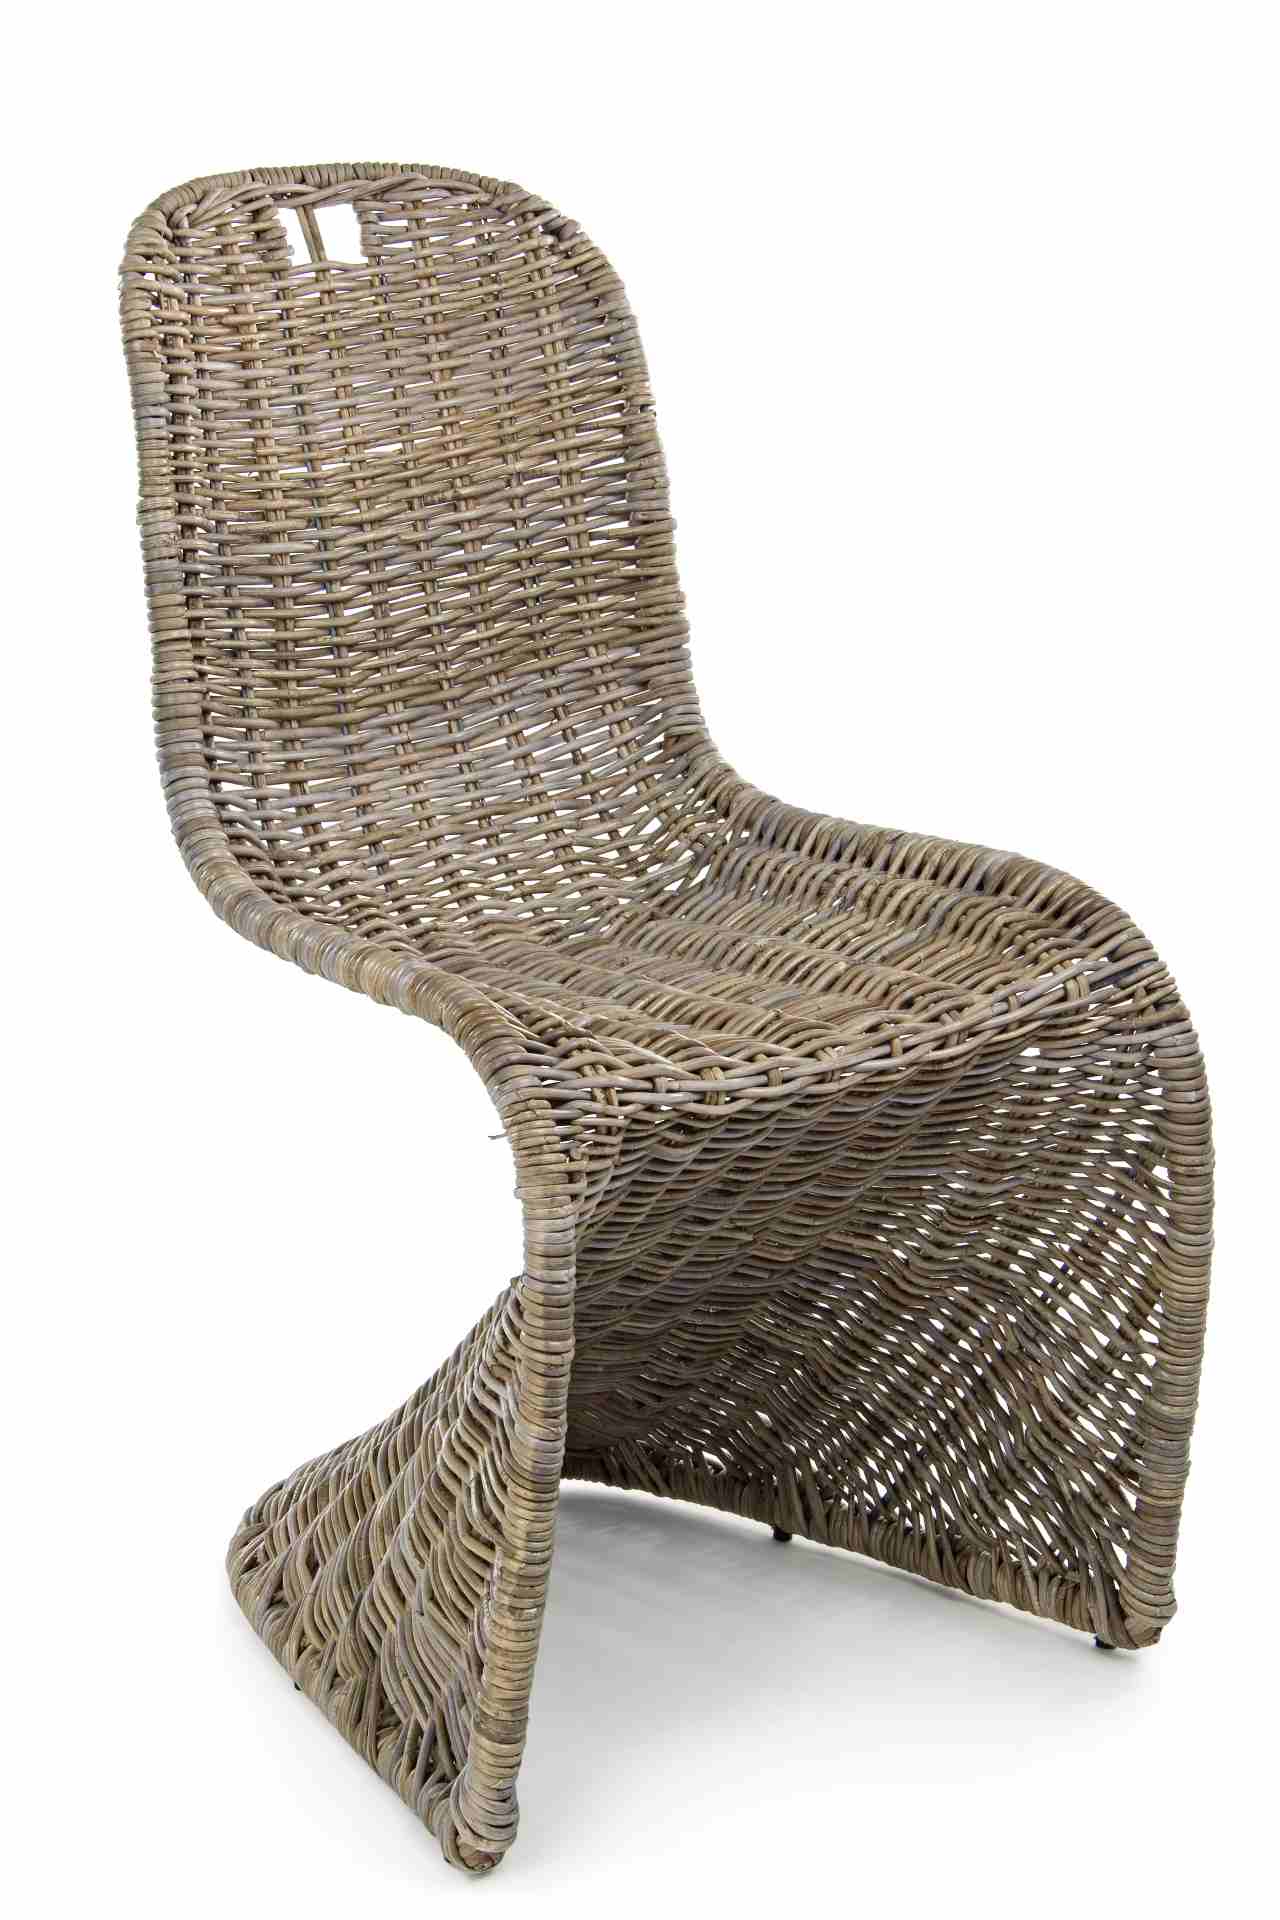 Der Stuhl Zacarias überzeugt mit seinem klassischem Design. Gefertigt wurde der Stuhl aus einem Kabu-Geflecht, welches einen natürlichen Farbton besitzt. Die Sitzhöhe beträgt 46 cm und es zu empfählen den Stuhl nicht direkten Sonnenlicht auszusetzen.